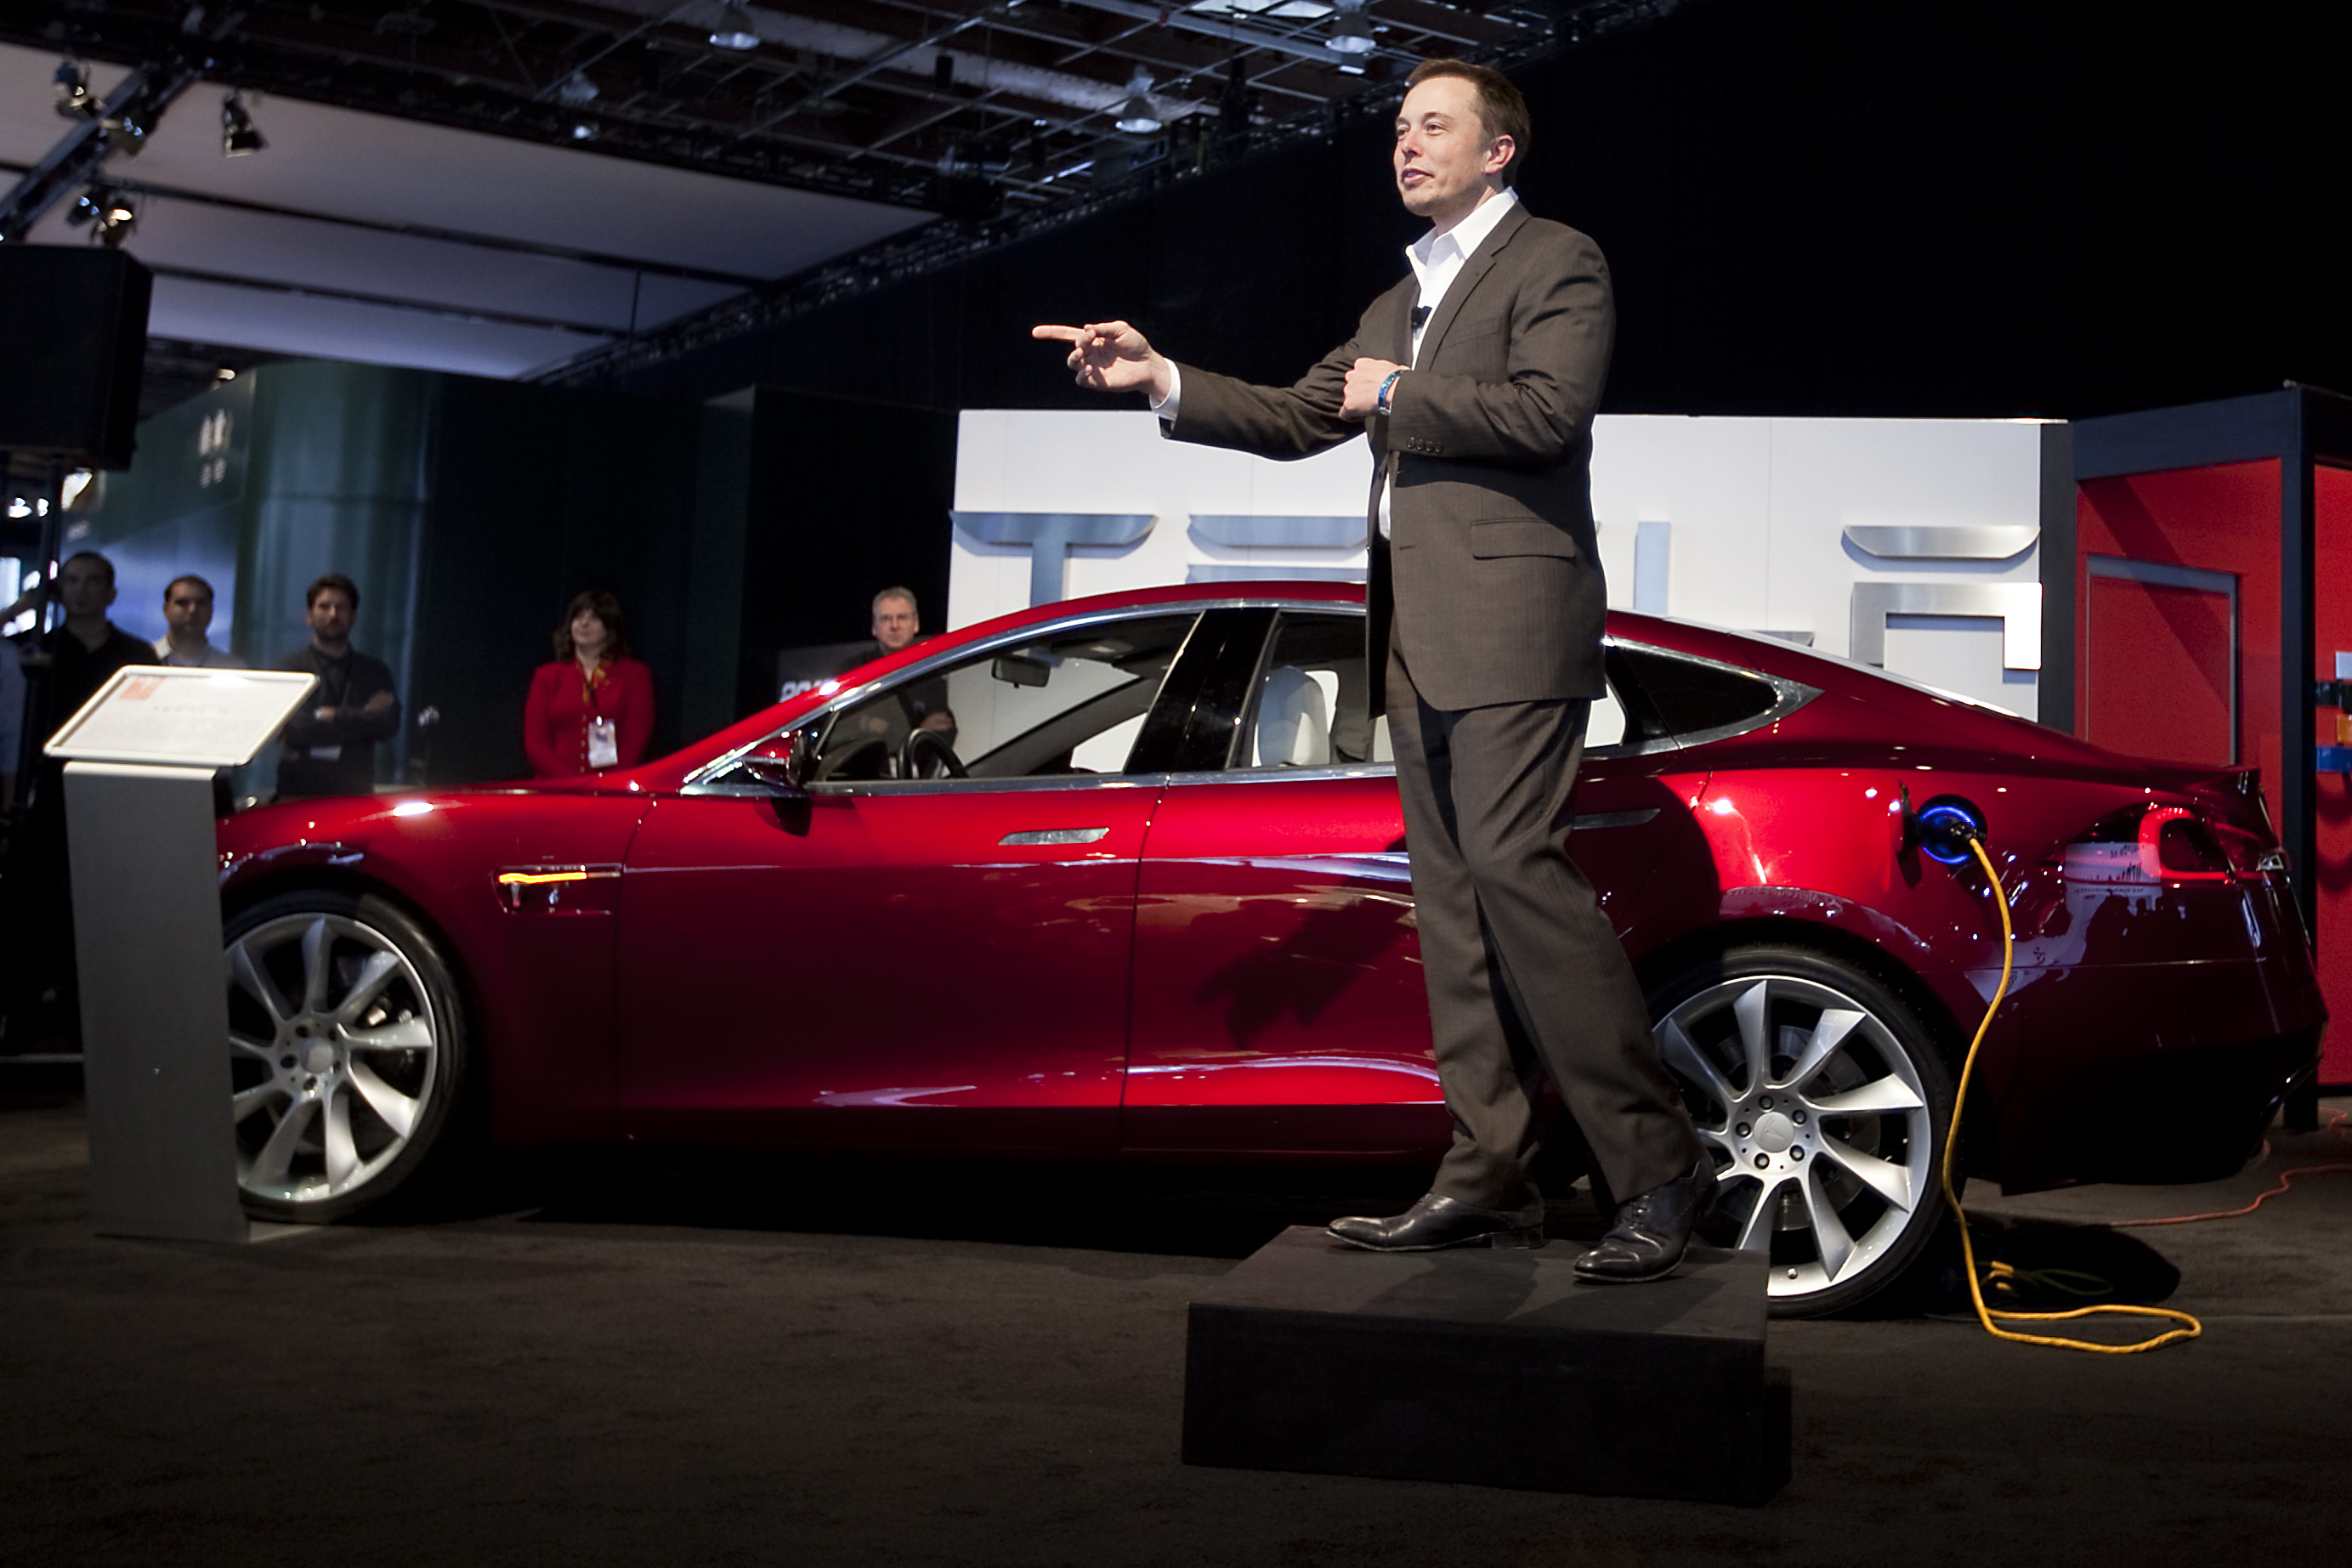 Tesla CEO Elon Musk slammed US President Joe Biden